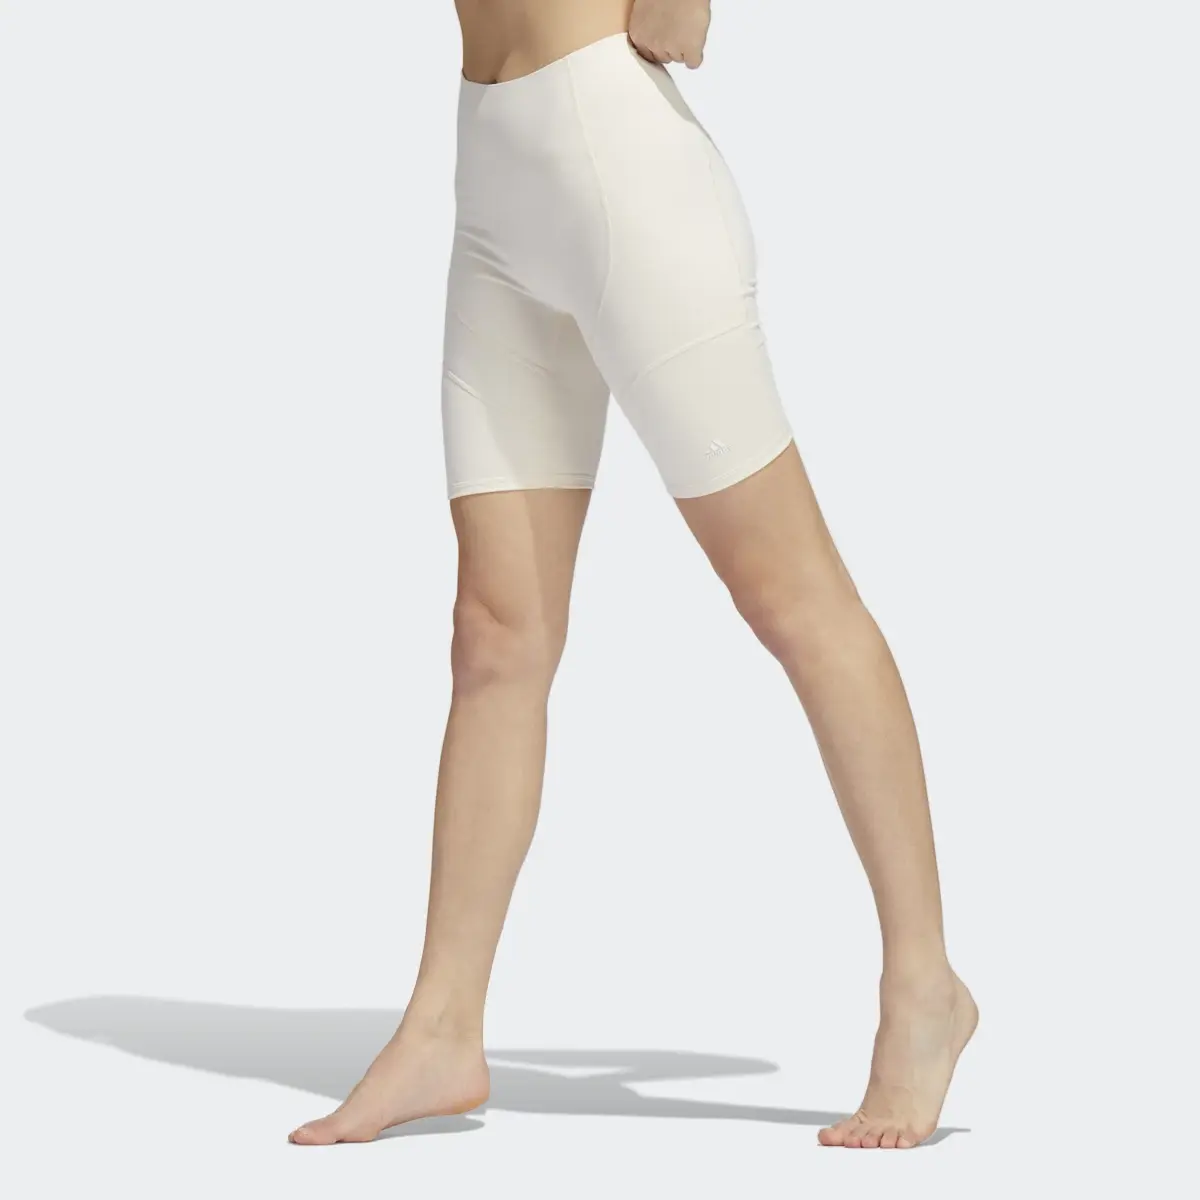 Adidas Yoga Studio Pocket Short Tights. 2